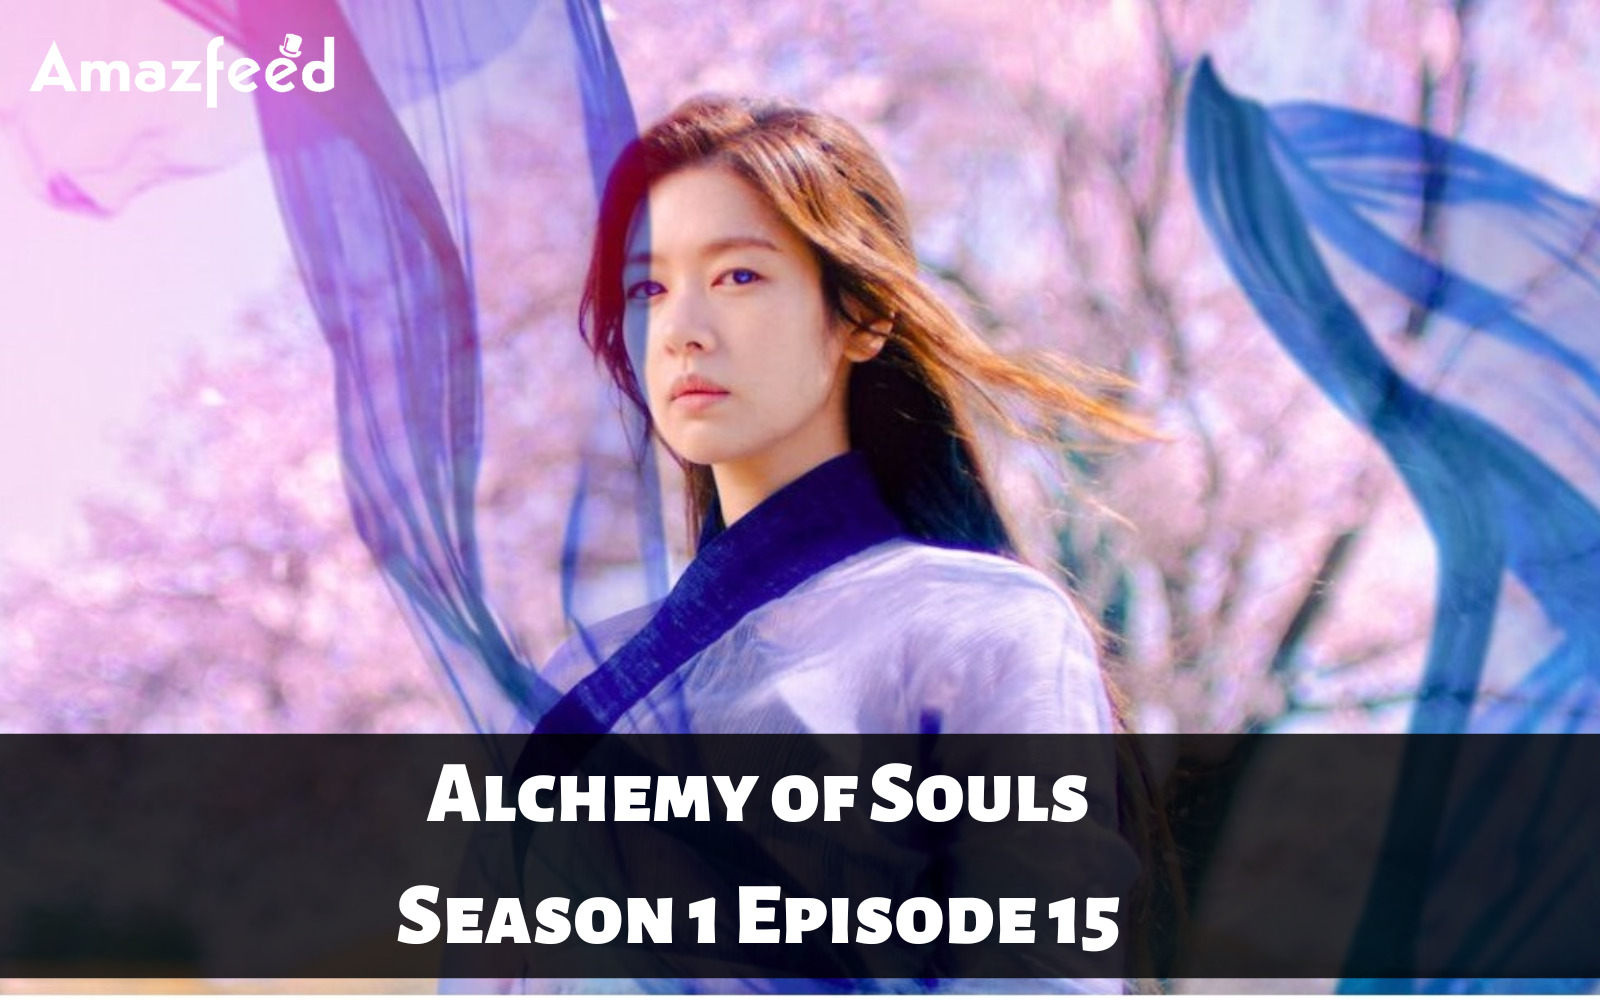 Alchemy of Souls Season 1 Episode 15 release date